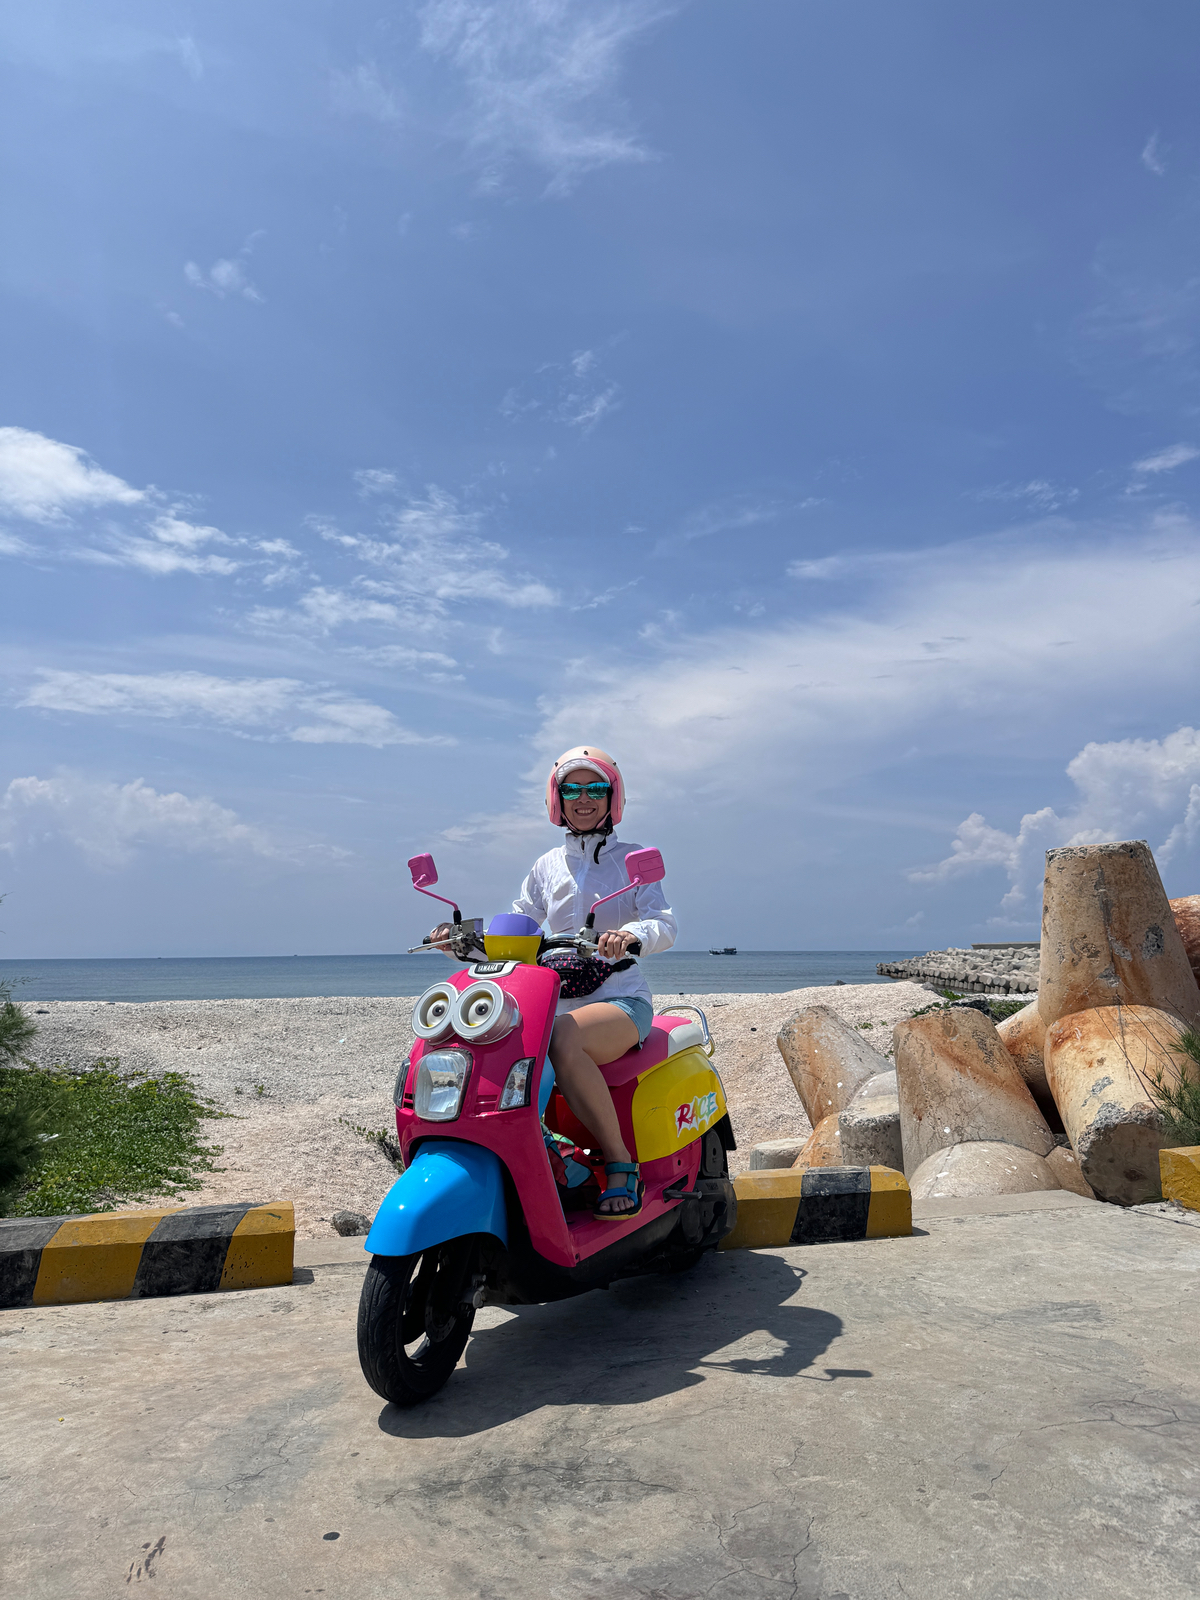 Nếu đi chơi bằng xe máy thì mình khoái nhất là đi ở đảo Phú Quý, xe đẹp màu sắc vui vẻ, lại là...